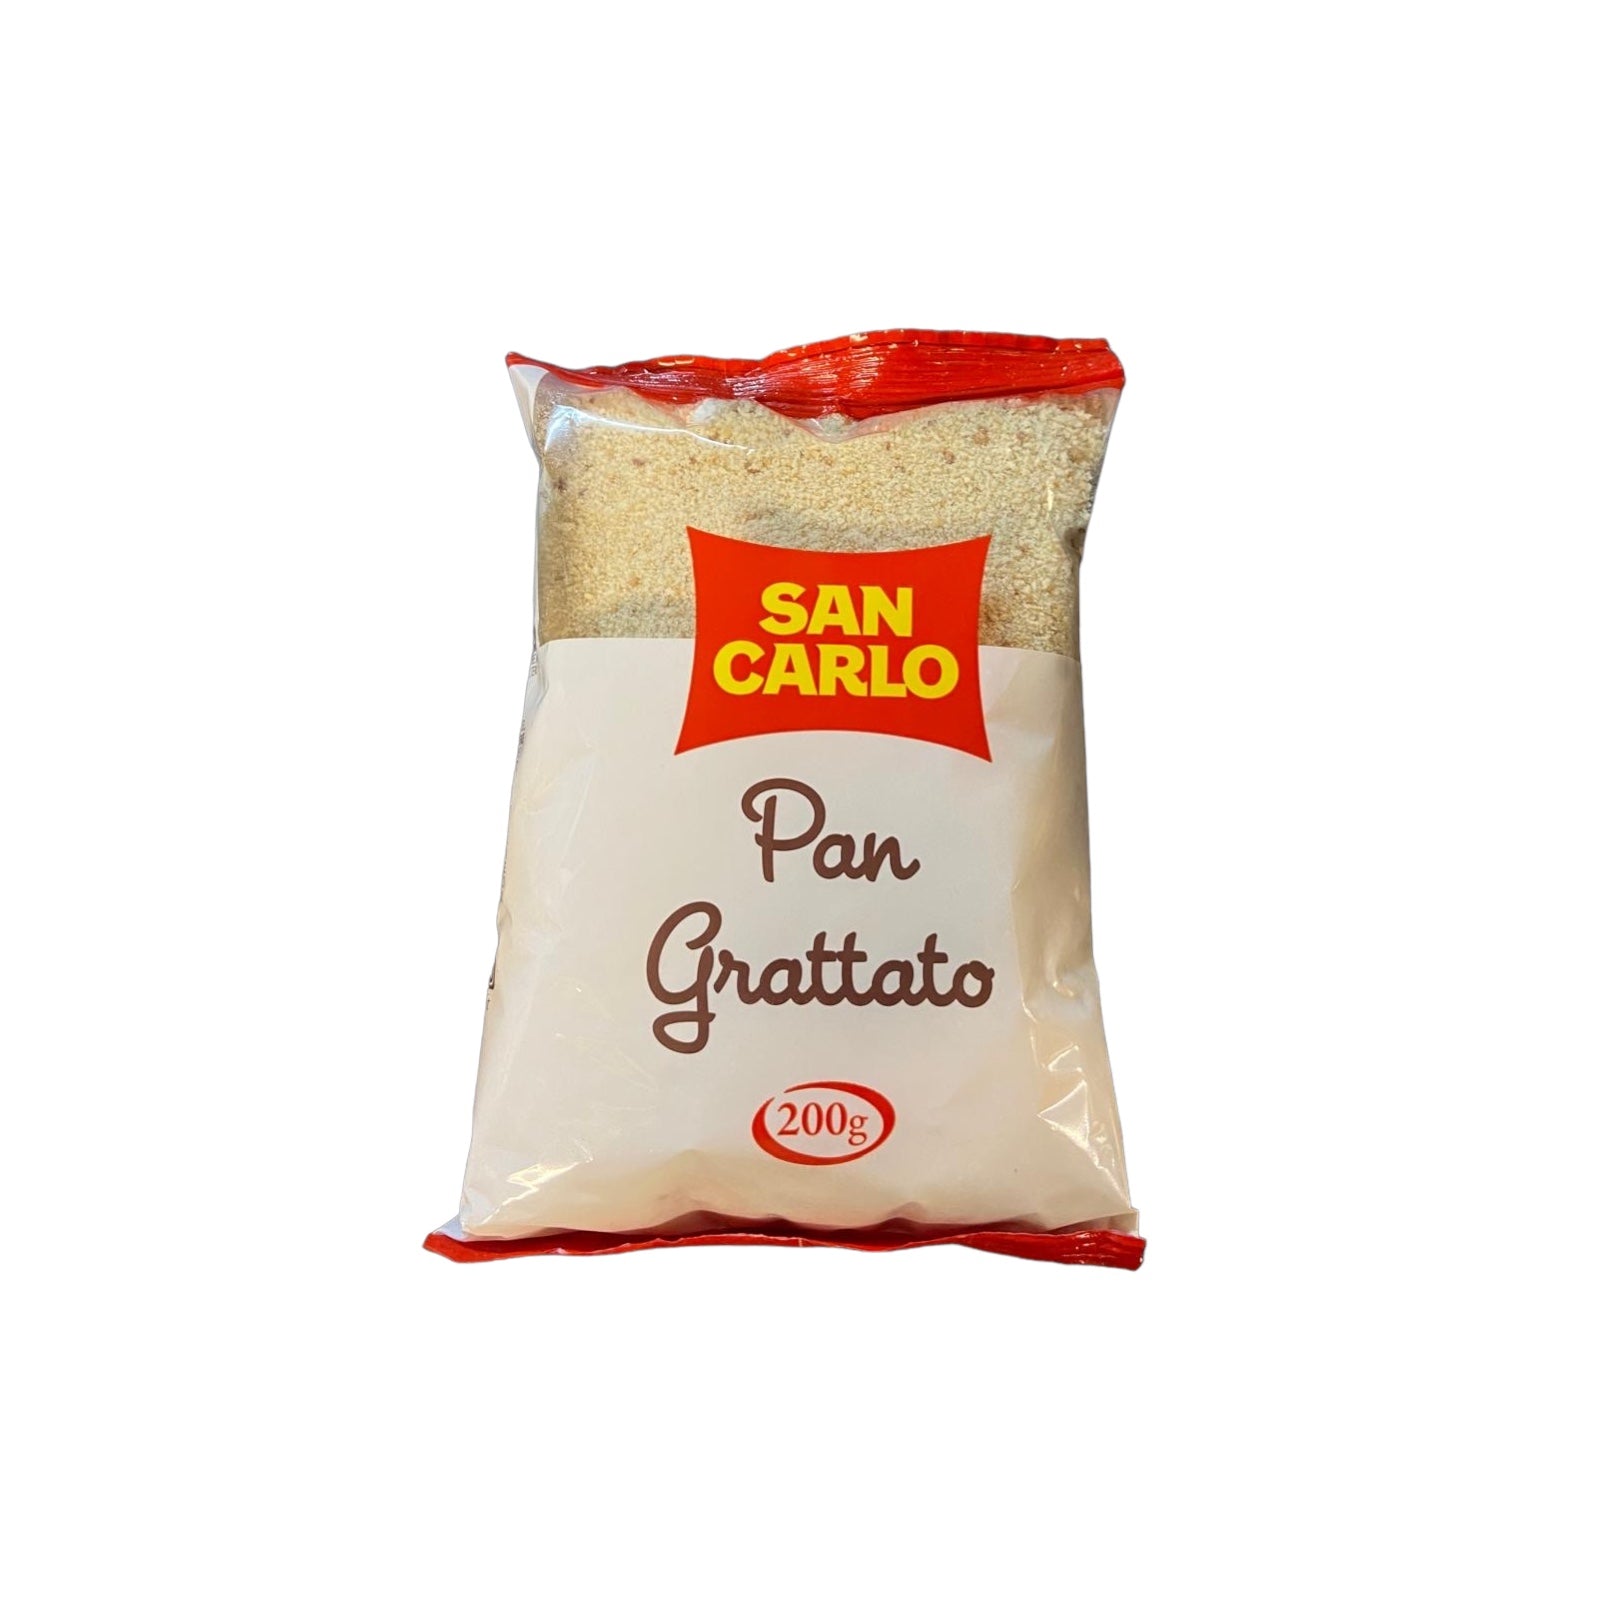 San Carlo Pan Grattato Bread Crumbs 200g